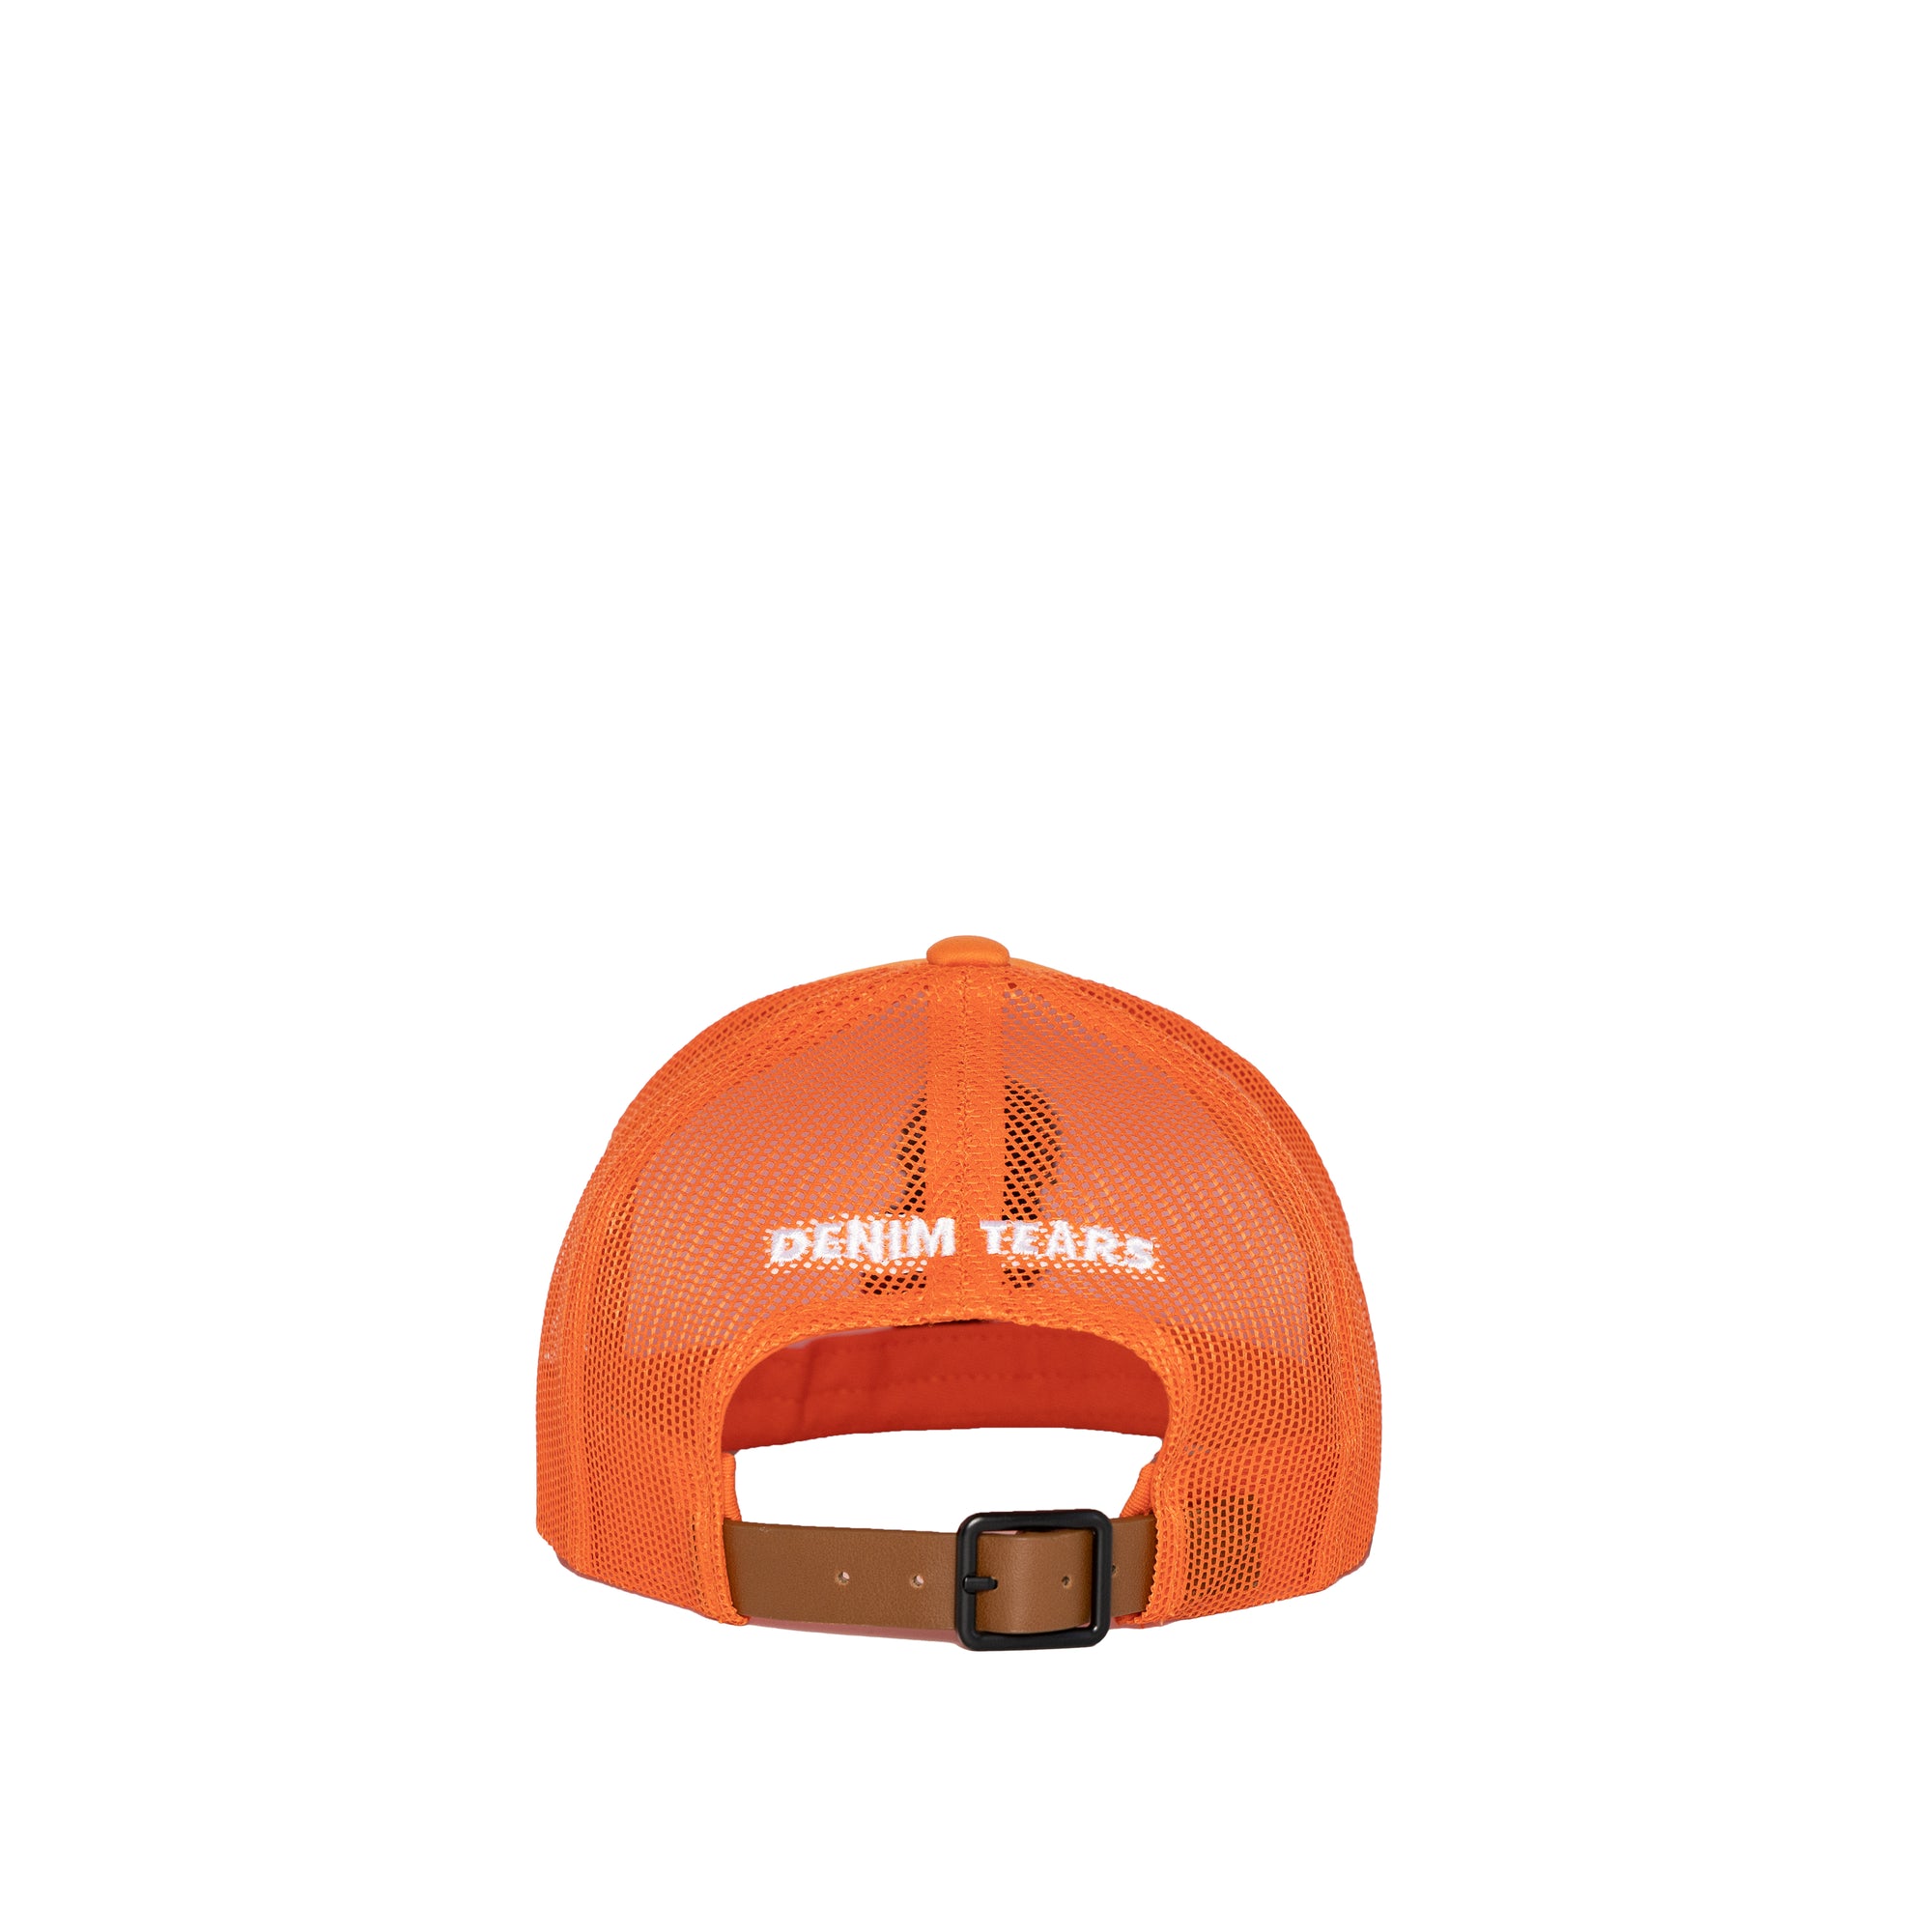 Denim Tears - Crown Made Of Cotton Trucker Hat - (Orange) view 2